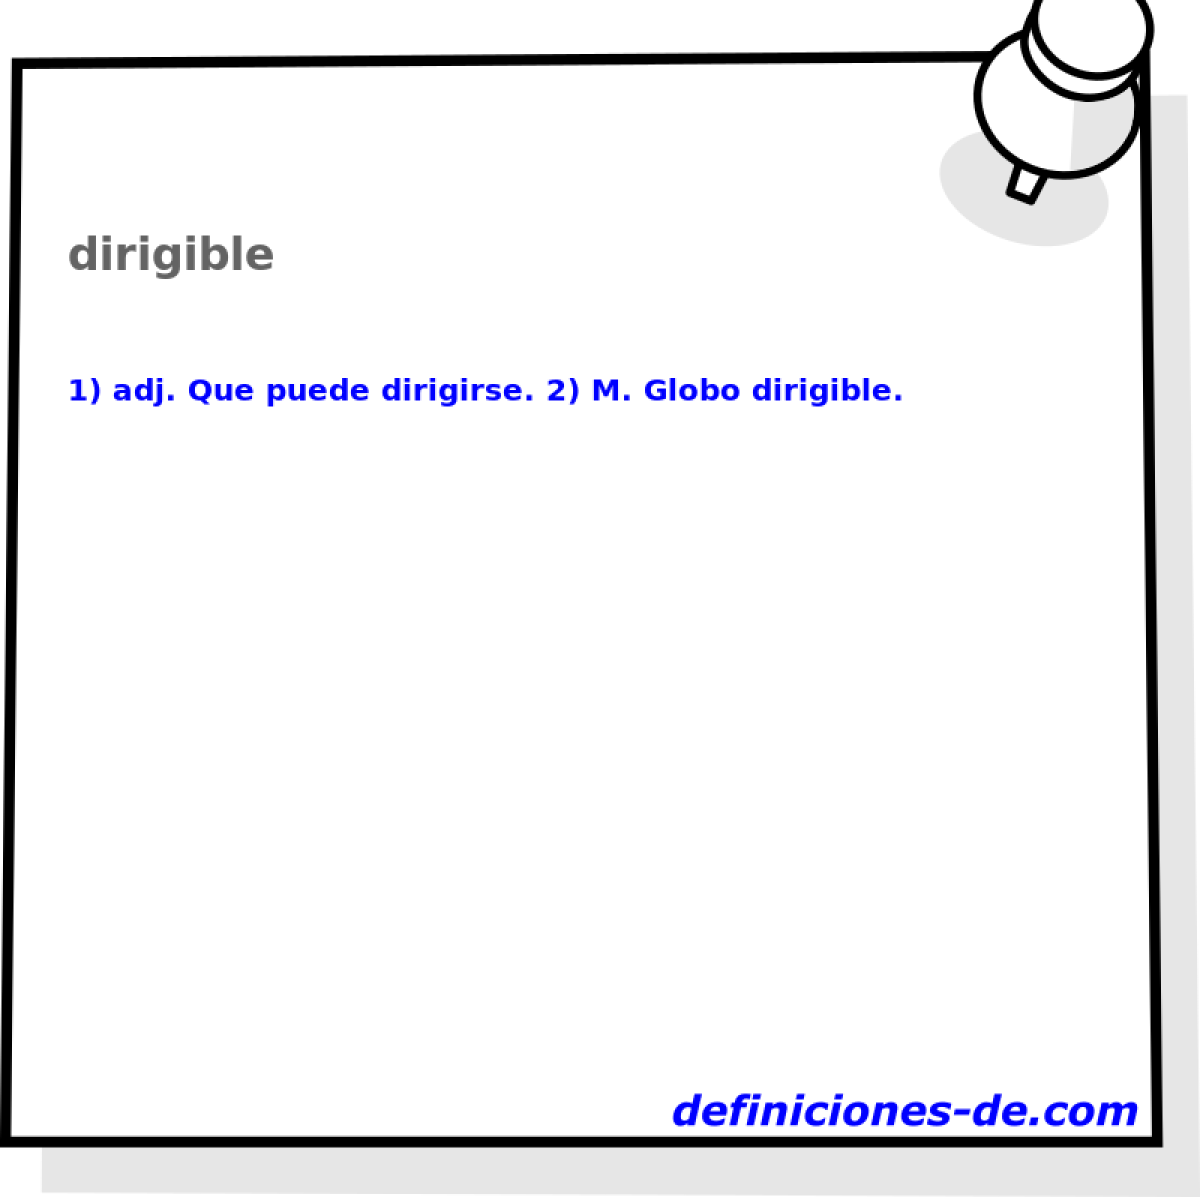 dirigible 